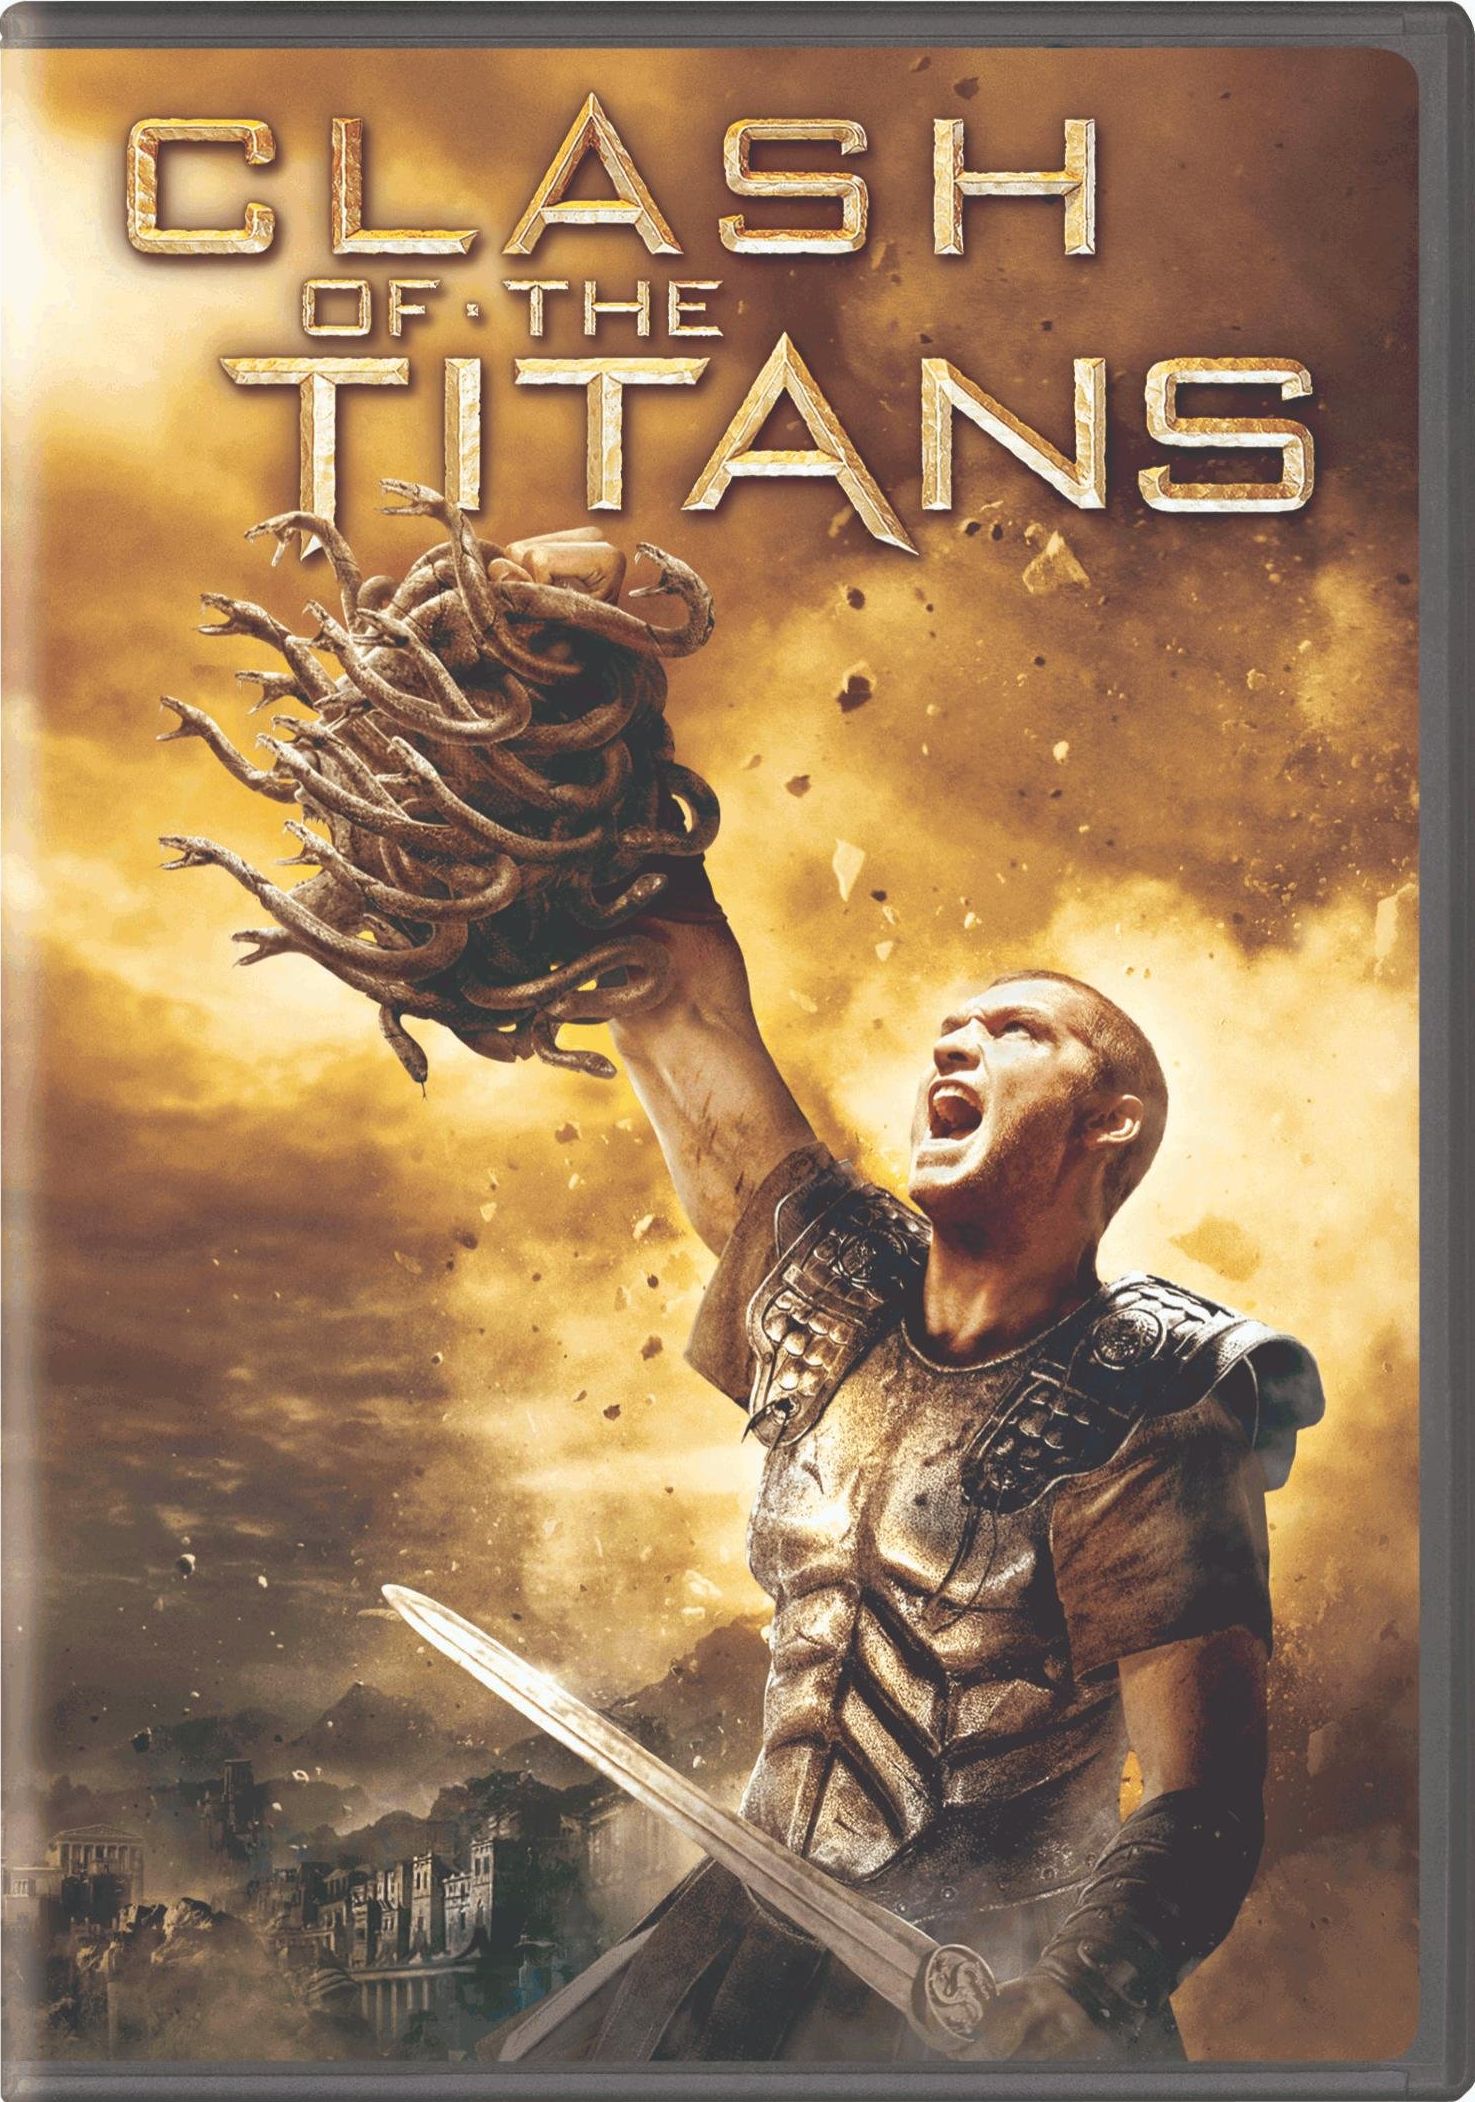 Clash of the Titans 1981 Bds · Clash Of The Titans (Blu-ray) (2010)